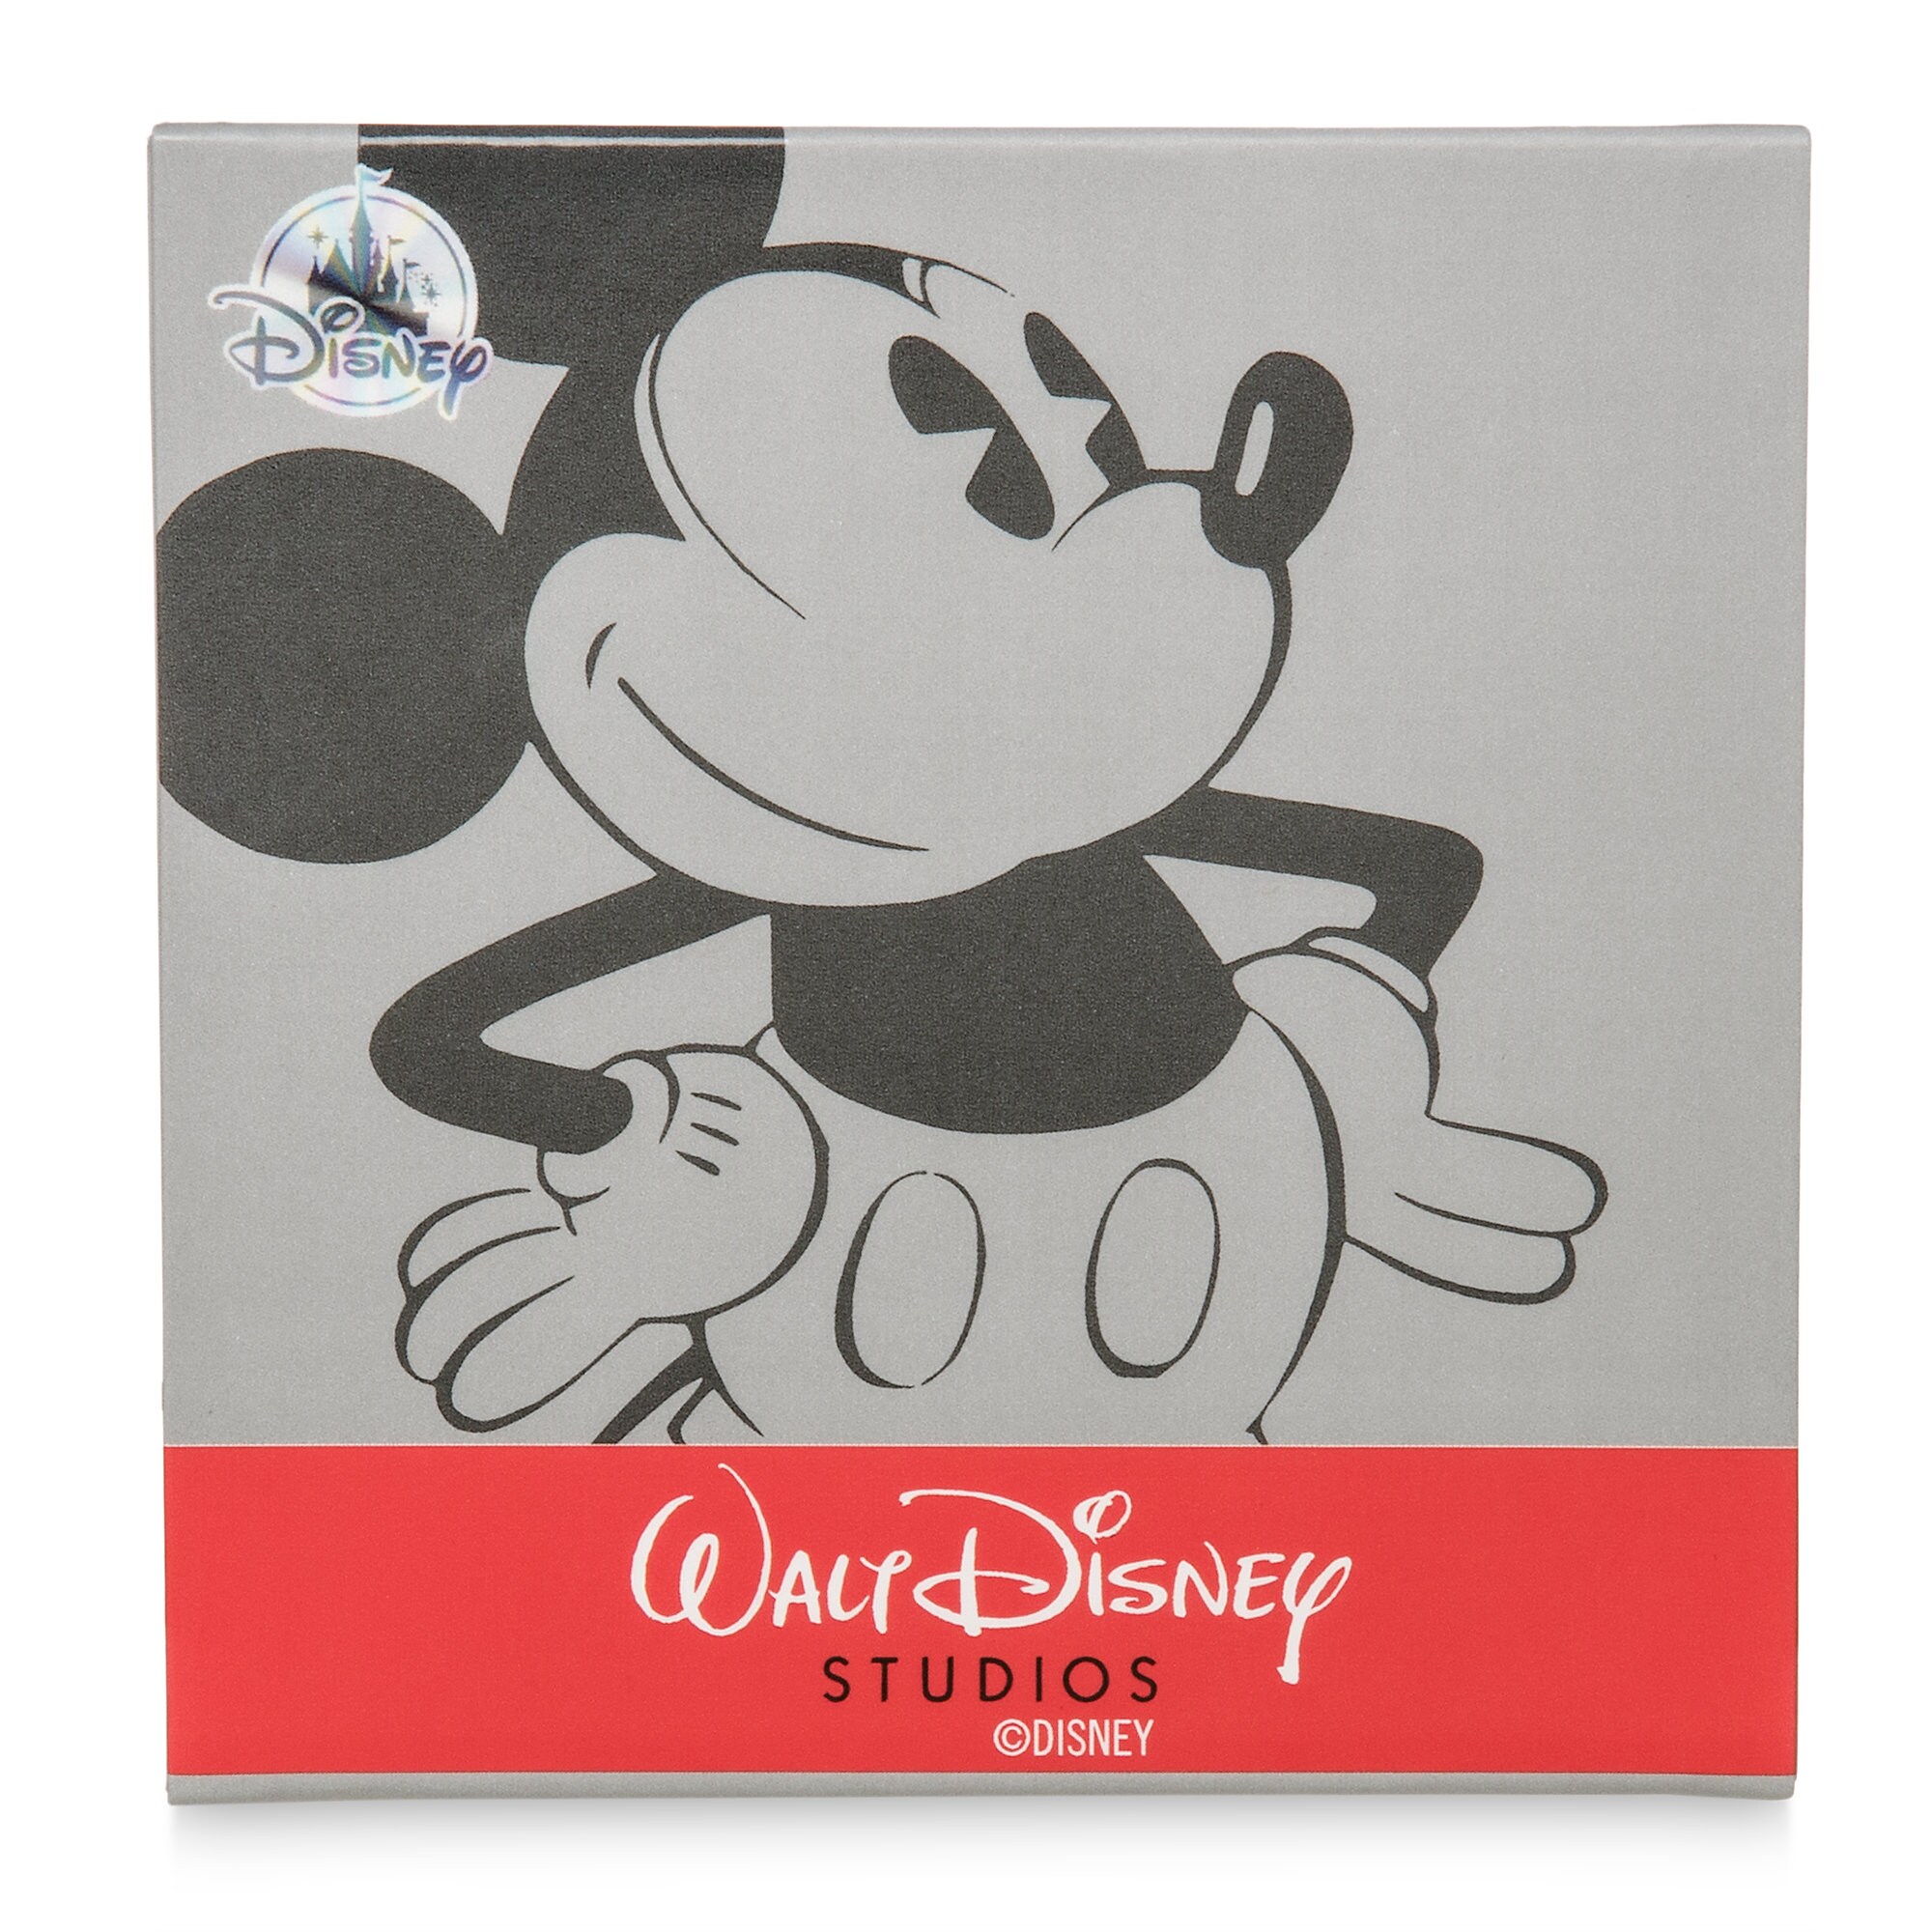 Mickey Mouse Watch for Men - Walt Disney Studios